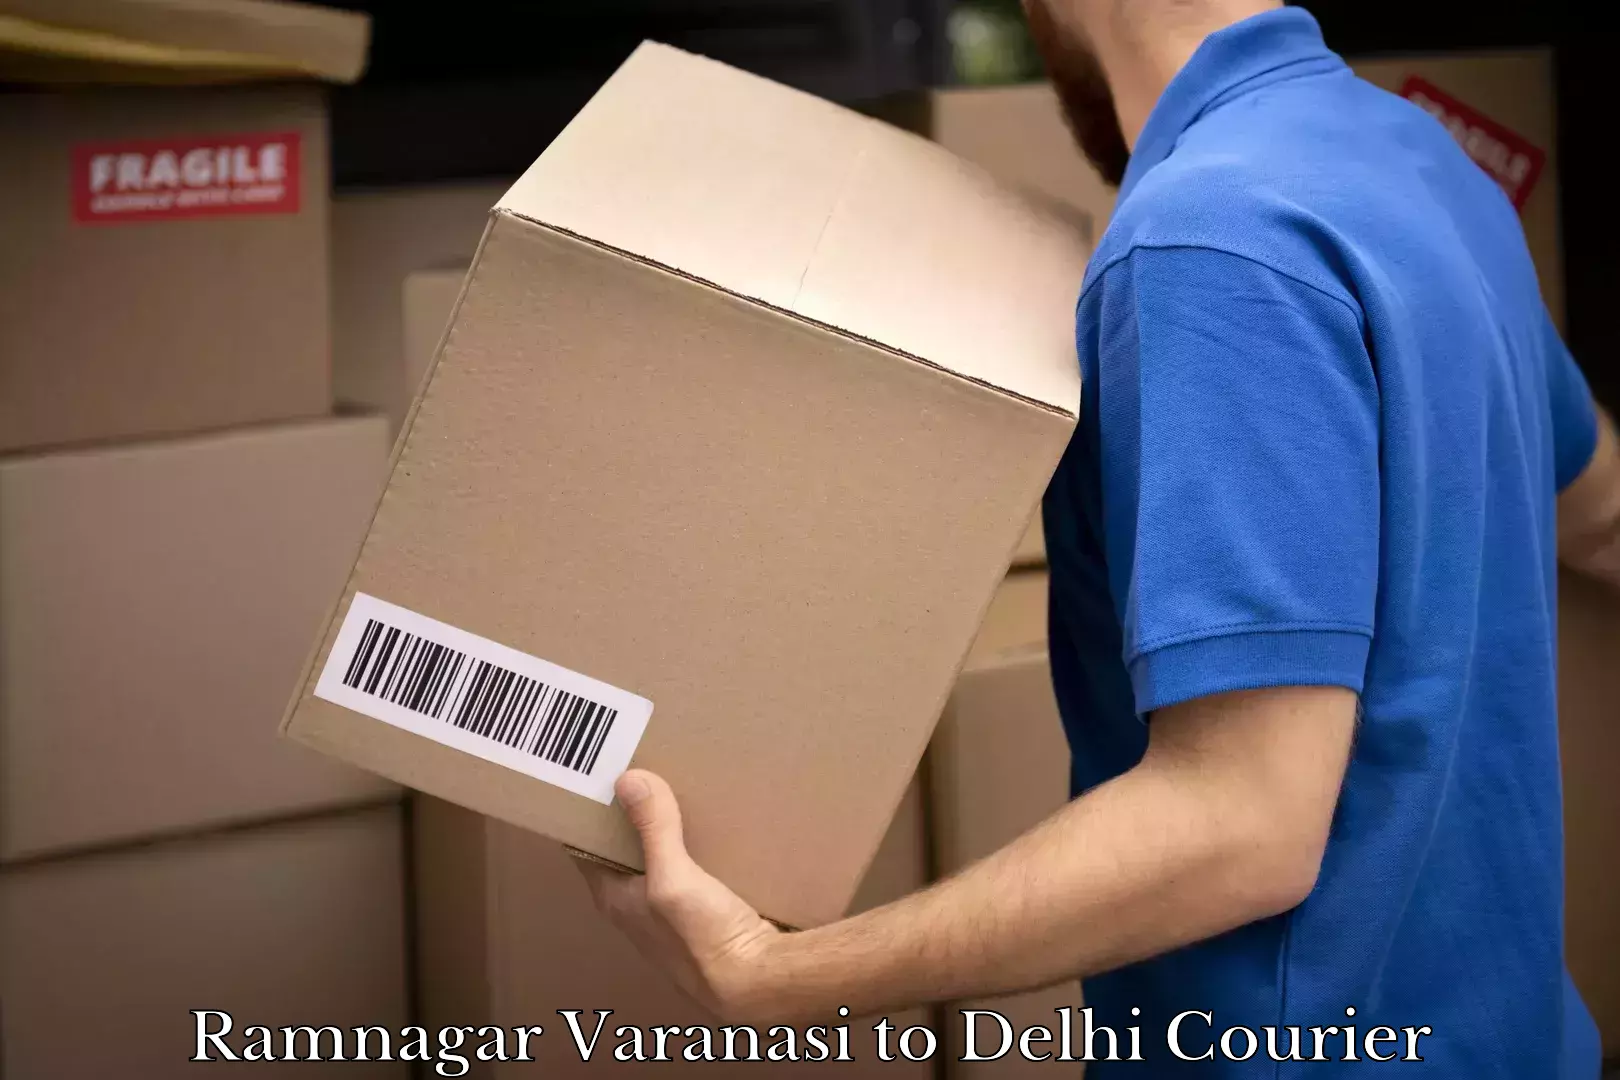 Parcel service for businesses Ramnagar Varanasi to Delhi